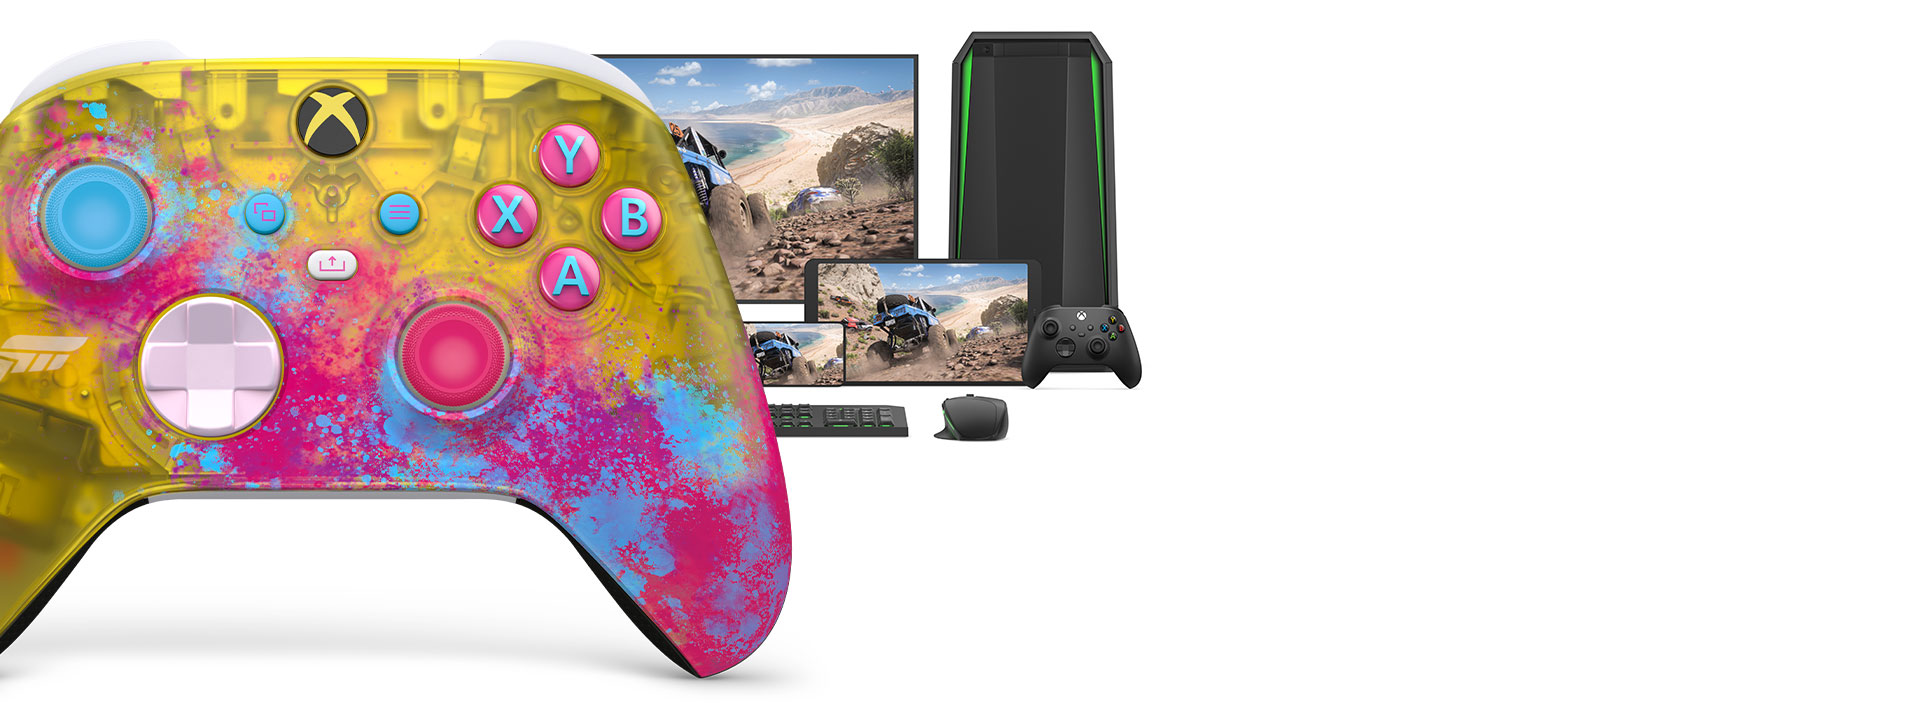 コンピューター、テレビ、Xbox Series S に接続した Xbox ワイヤレス コントローラー Forza Horizon 5